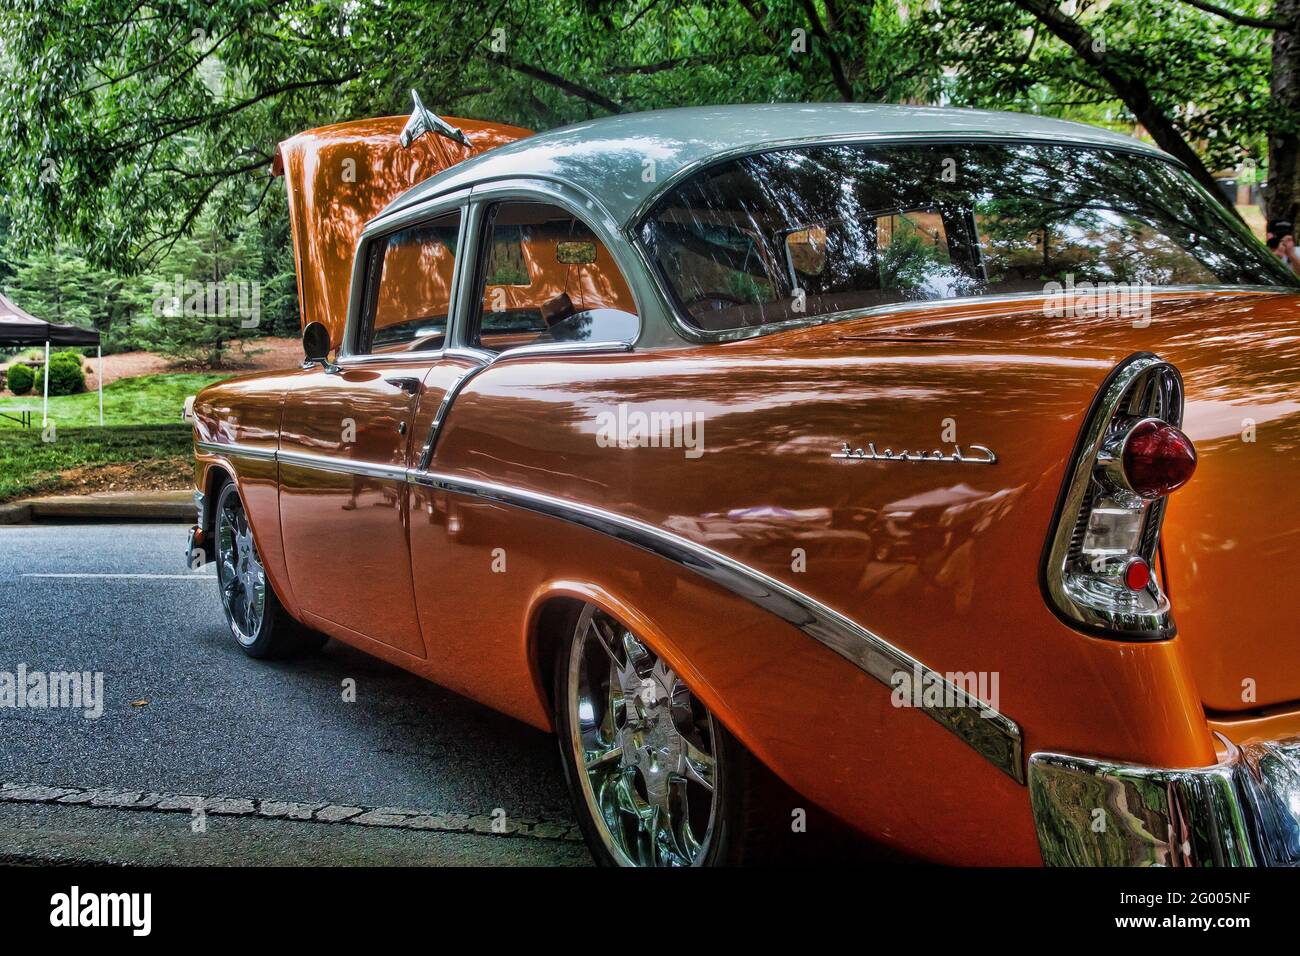 Classic Orange Car in Park Stock Photo